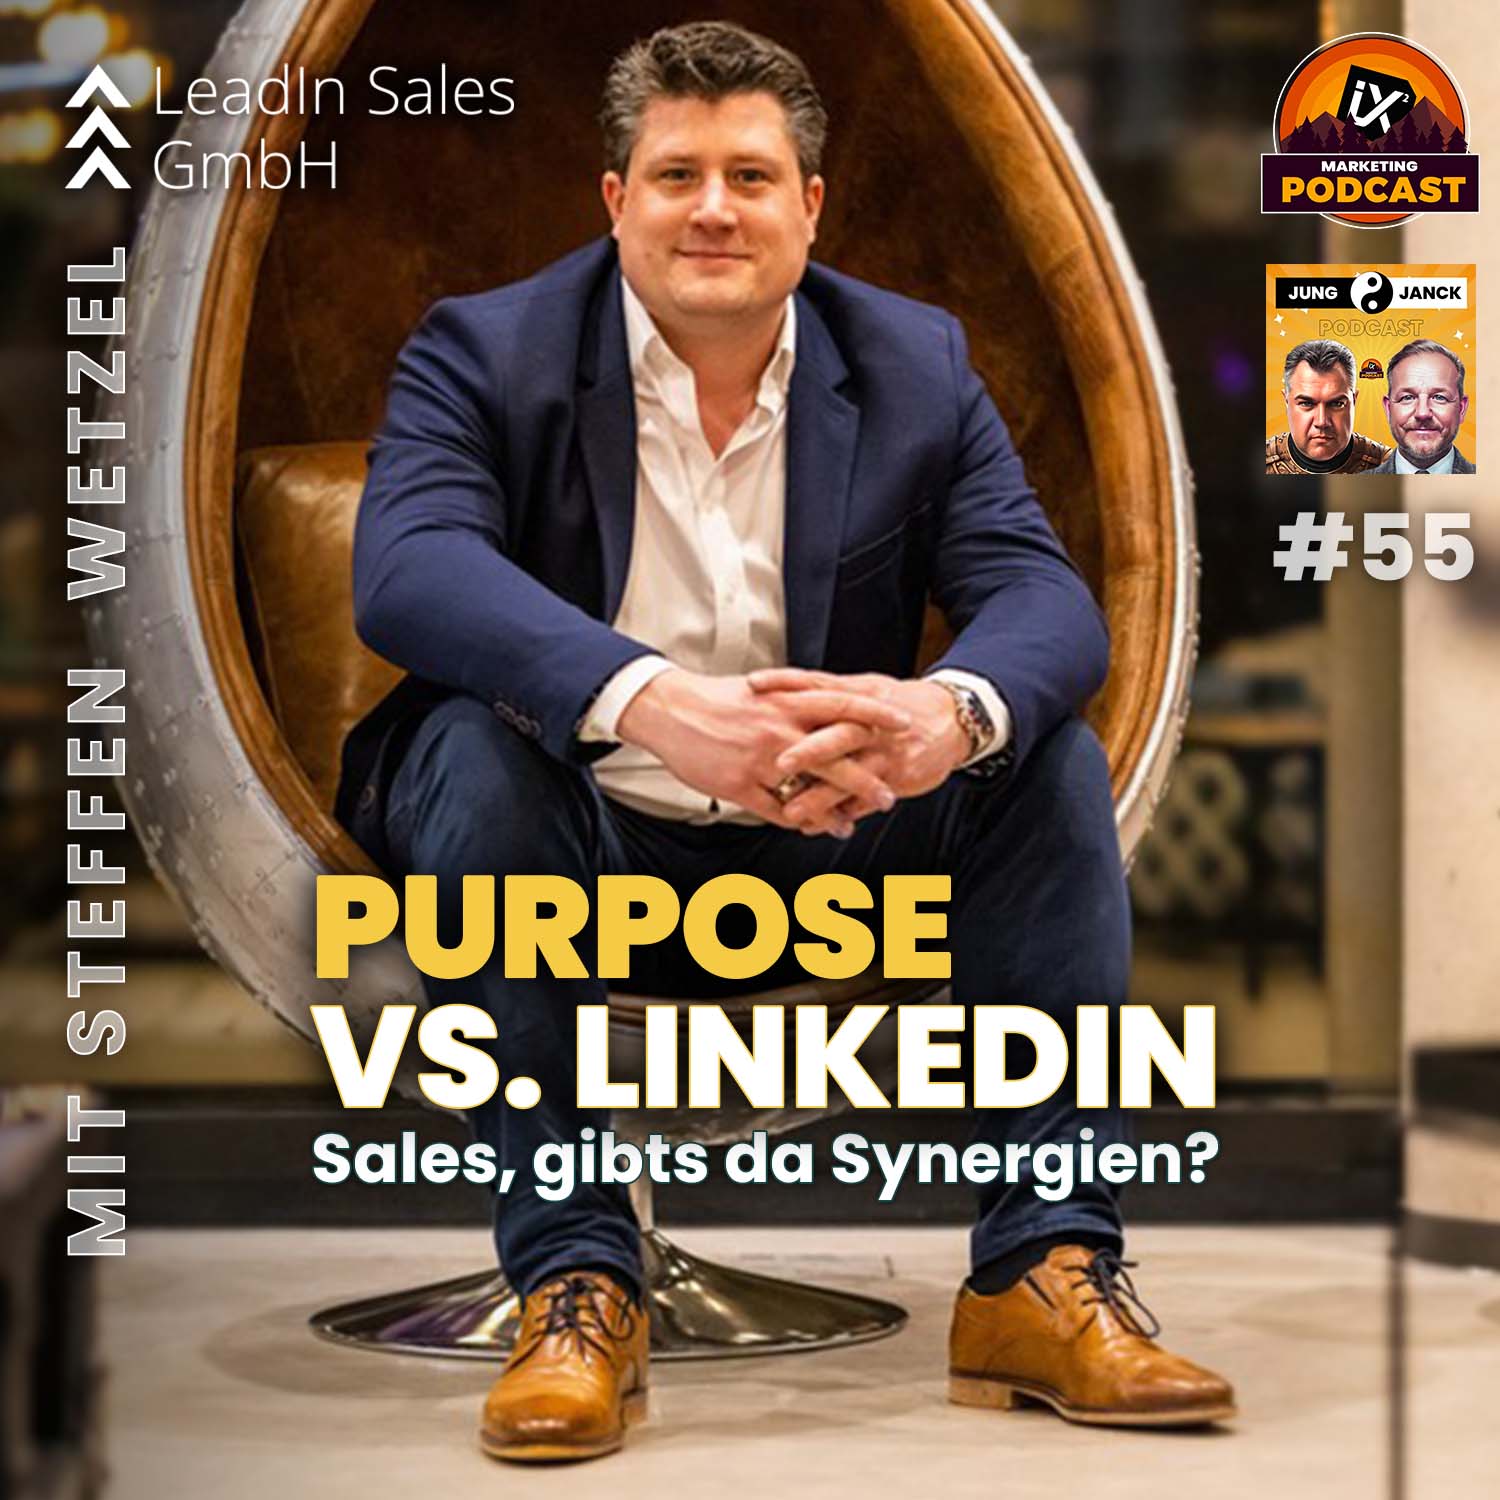 Purpose VS. LinkedIn mit Steffen Wetzel | Jung & Janck #55